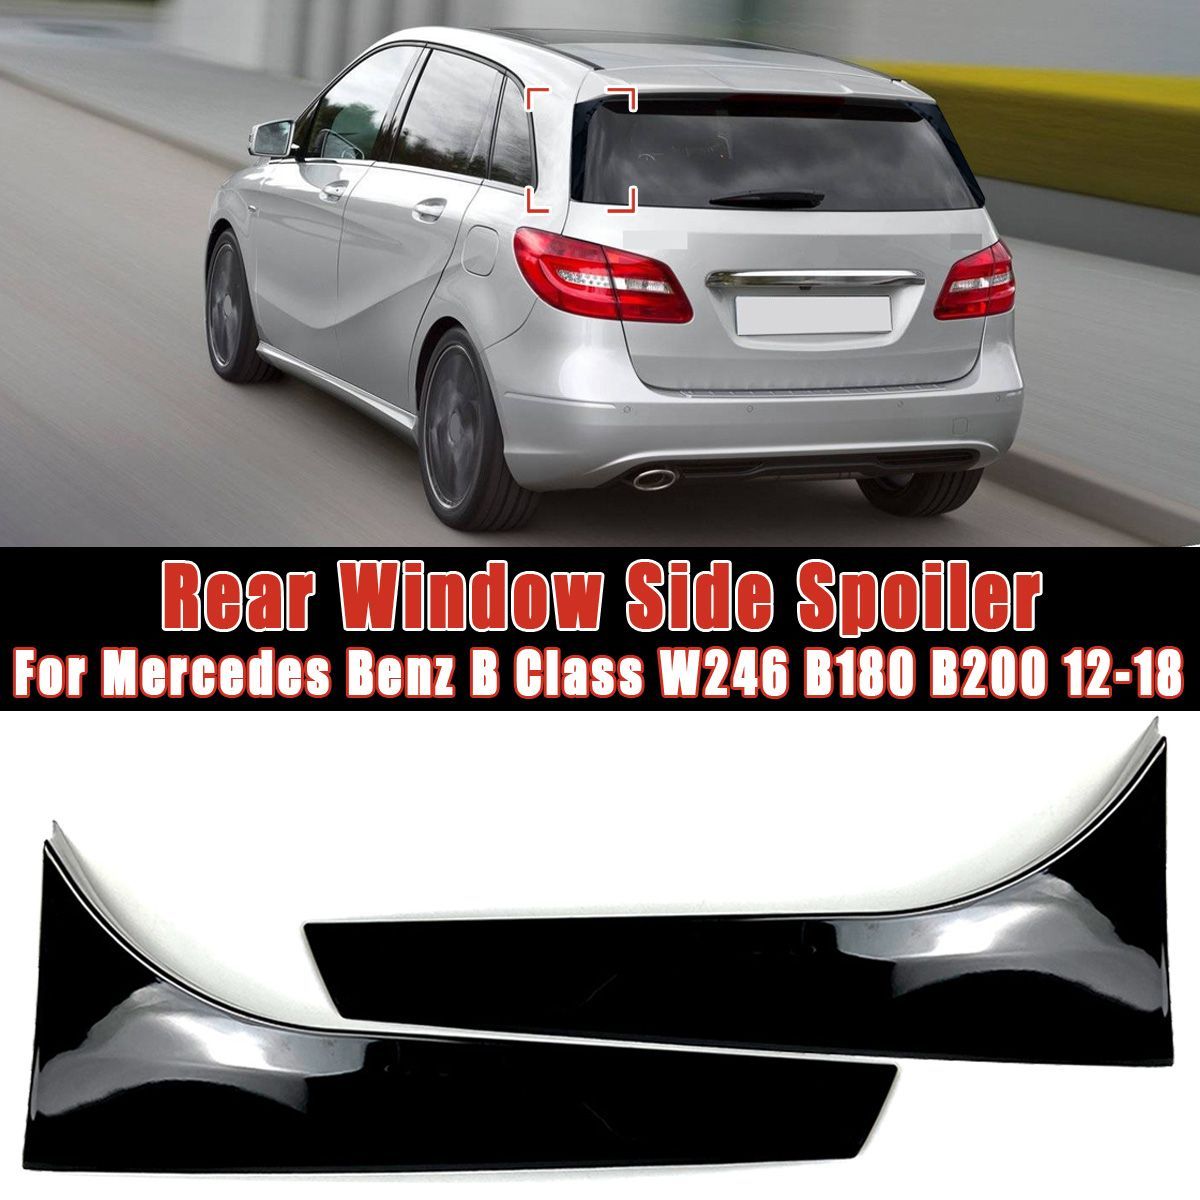 Car-Rear-Window-Side-Spoiler-Wing-Spoiler-Canard-Canards-Splitter-For-Mercedes-B-Class-W246-B180-B20-1625593